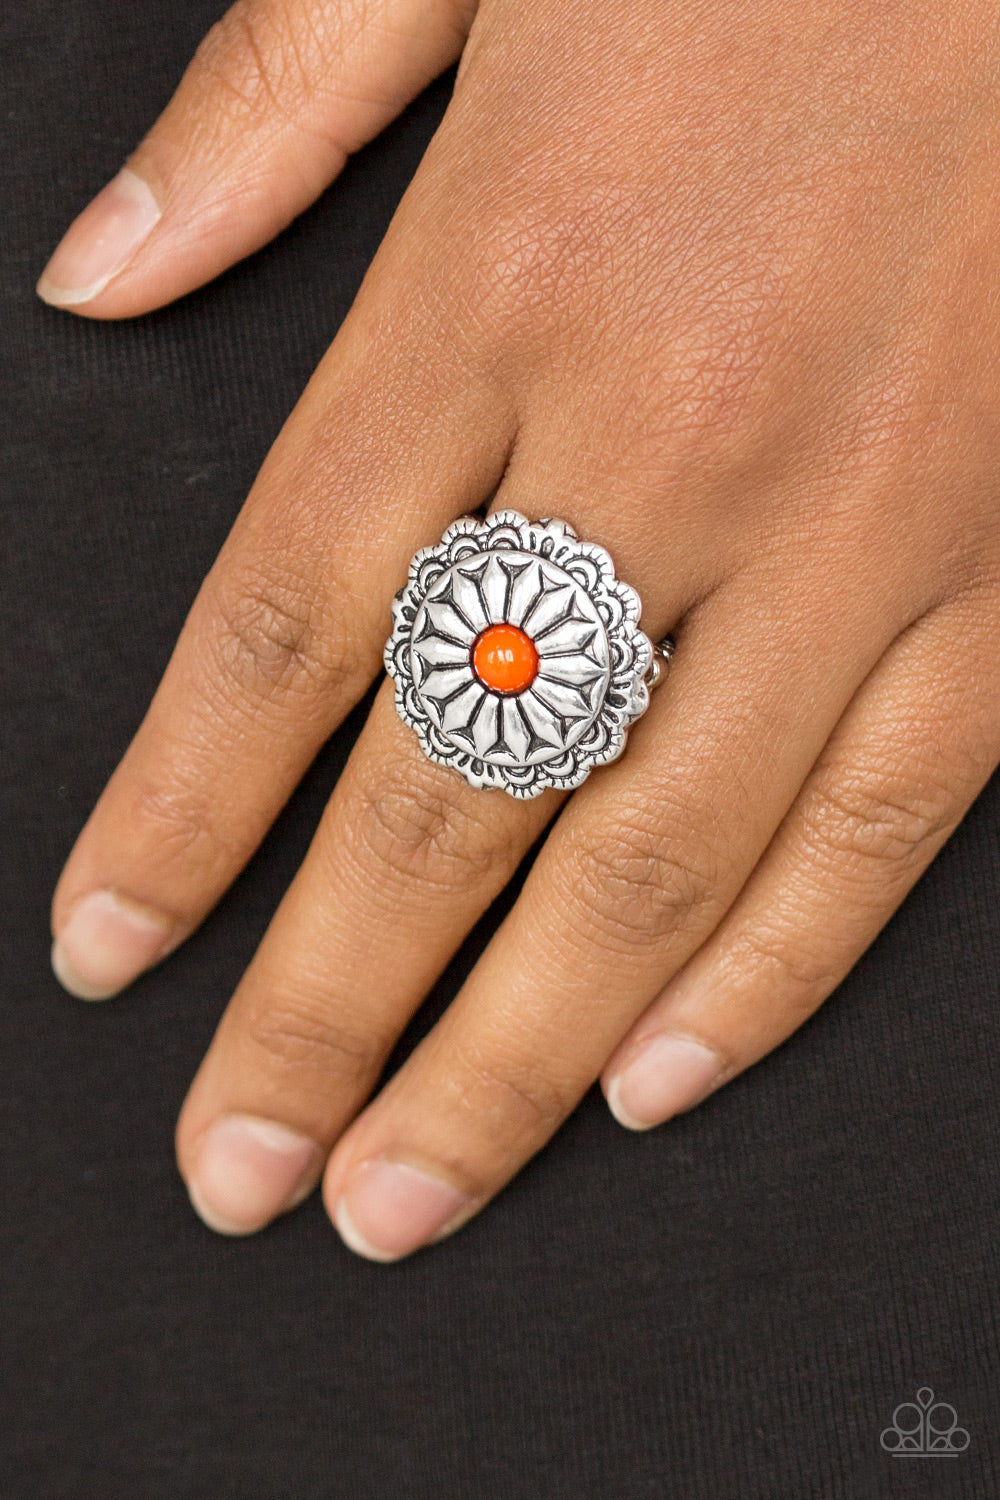 Daringly Daisy Orange Ring